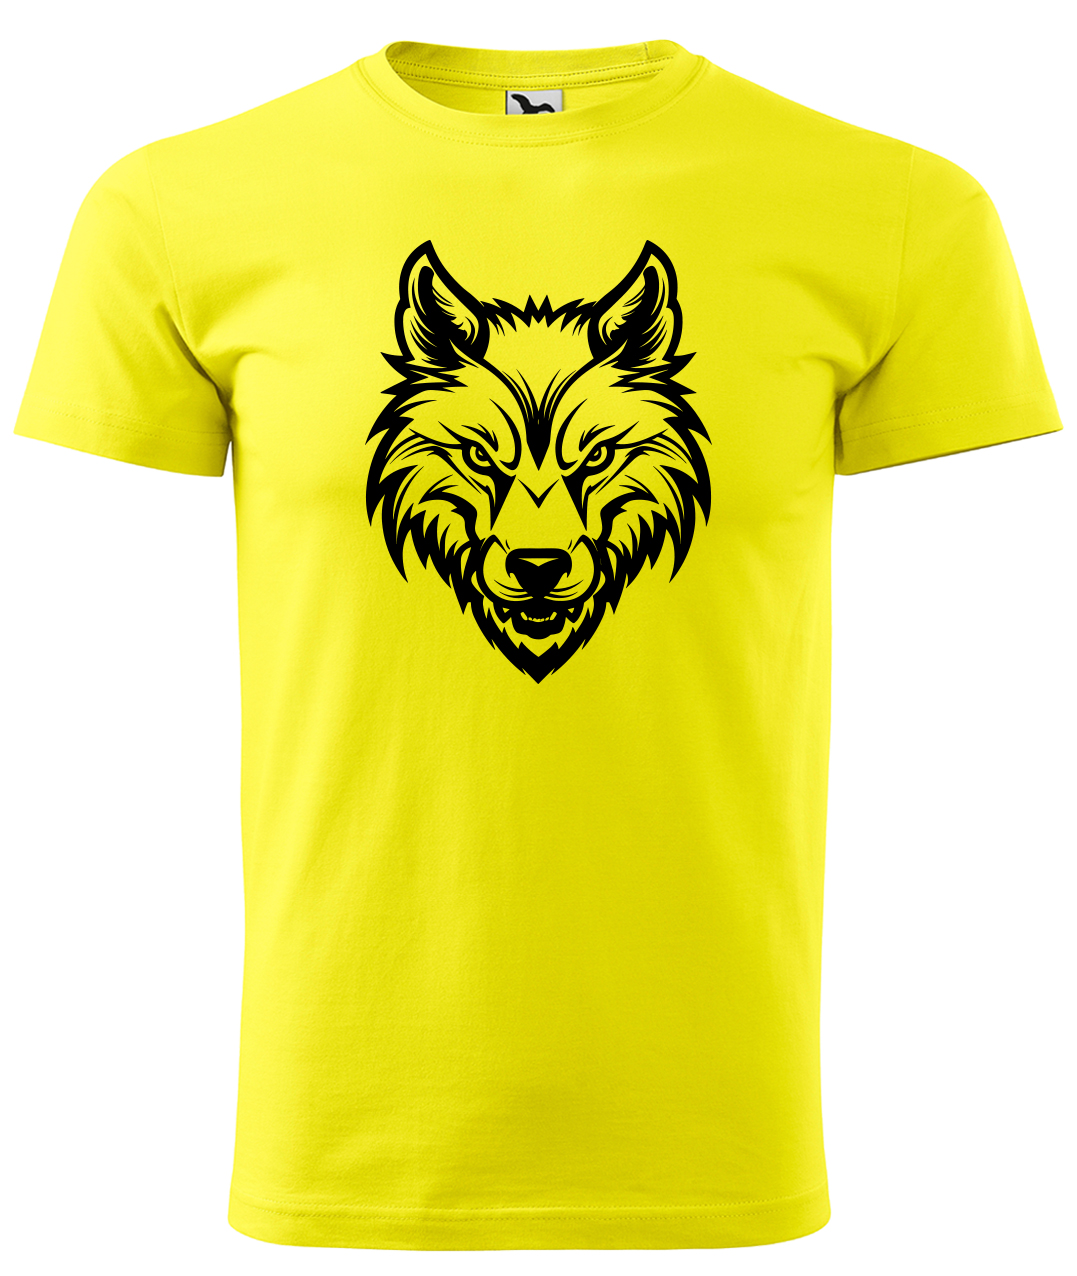 Dětské tričko s vlkem - Alfa samec Velikost: 6 let / 122 cm, Barva: Žlutá (04), Délka rukávu: Krátký rukáv